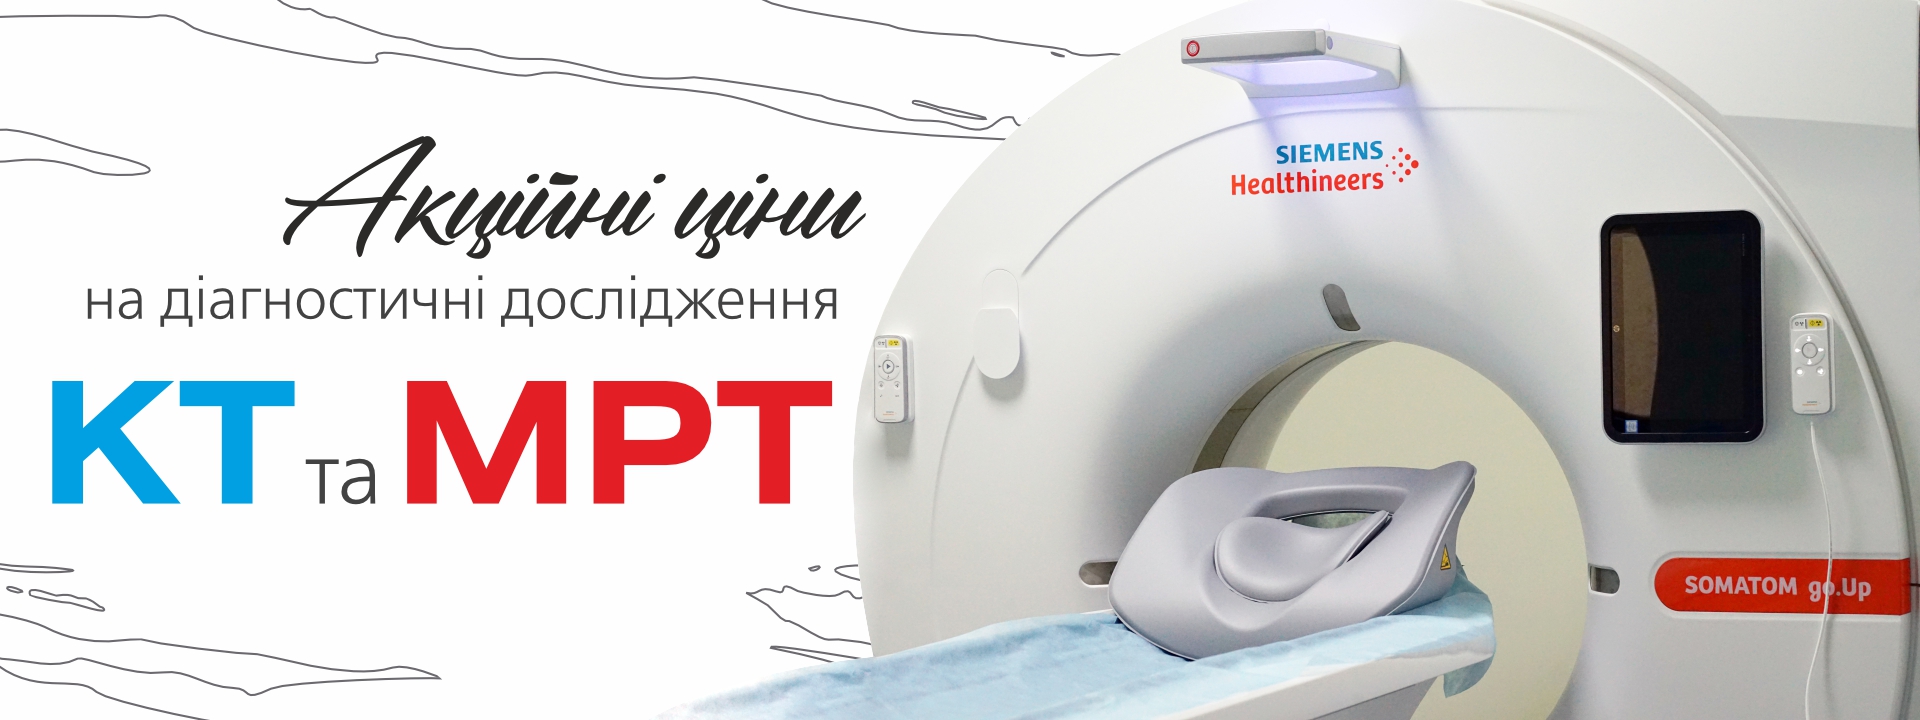 Акційні пропозиції на діагностику КТ та МРТ - 0 - svekaterina.ua